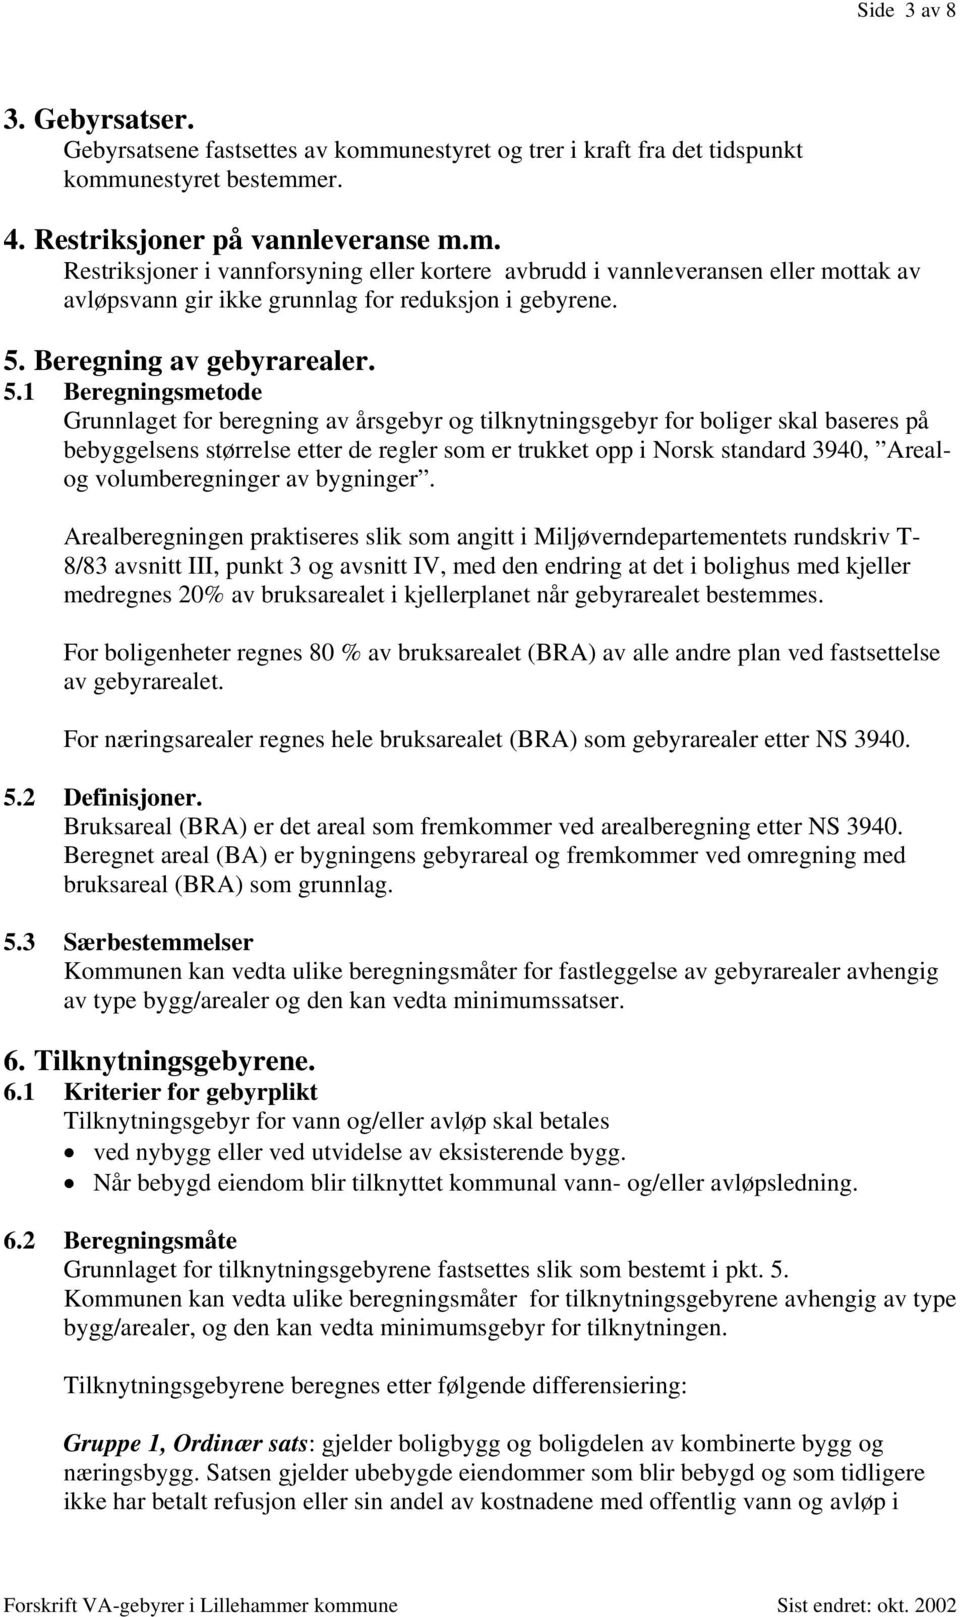 1 Beregningsmetode Grunnlaget for beregning av årsgebyr og tilknytningsgebyr for boliger skal baseres på bebyggelsens størrelse etter de regler som er trukket opp i Norsk standard 3940, Arealog